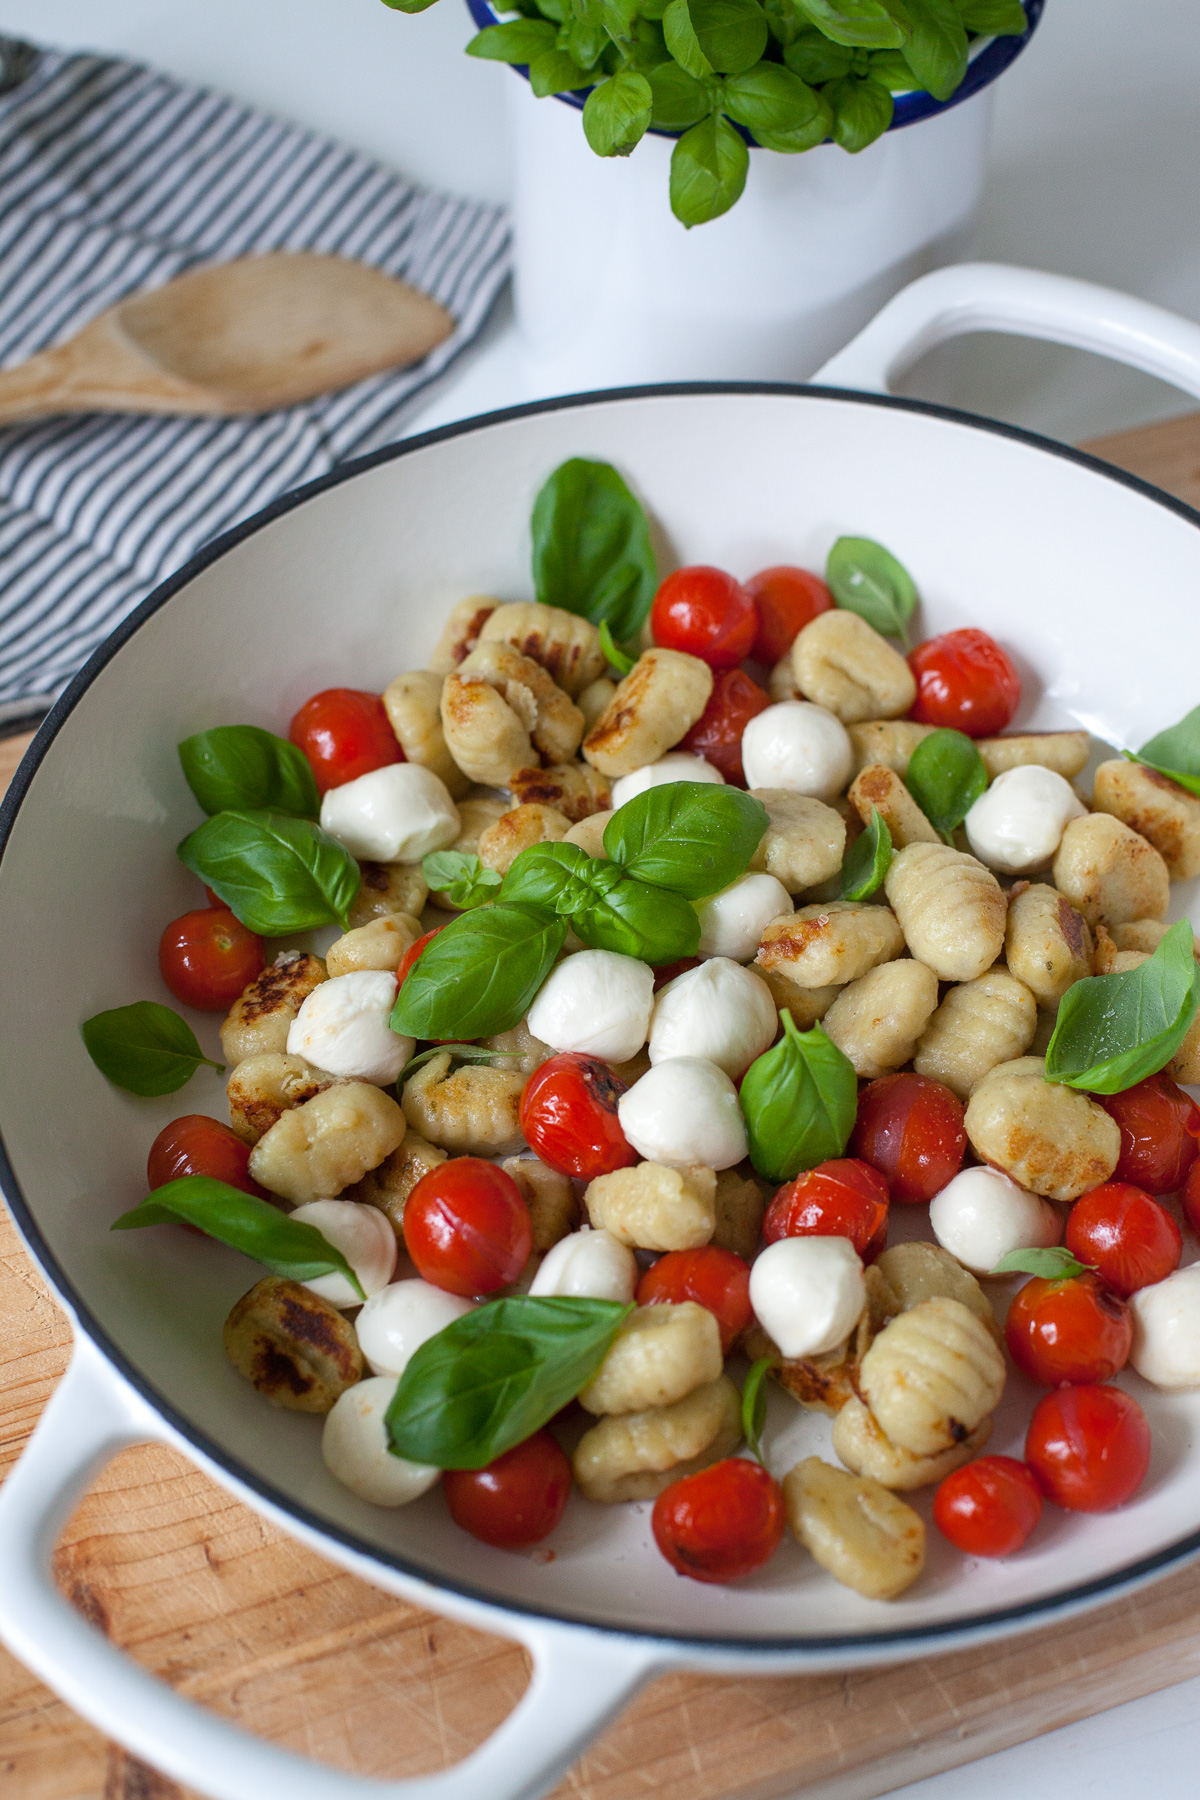 Schnelle Gnocchi mit Tomate und Mini-Mozzarella - perfekt für eine kurze Mittagspause! 